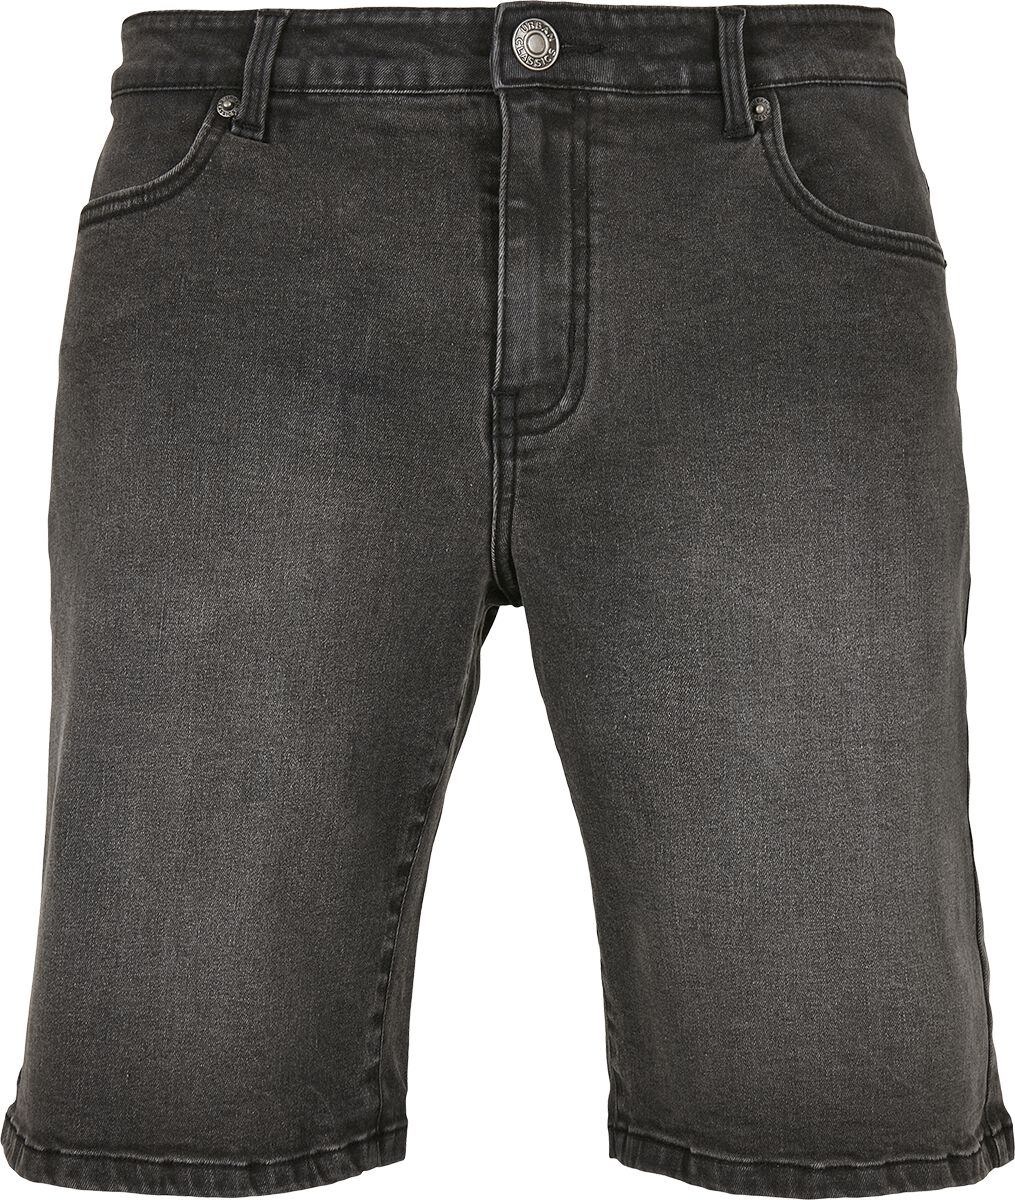 Urban Classics Short - Releaxed Fit Jeans Shorts - 28 bis 38 - für Männer - Größe 34 - grau von Urban Classics